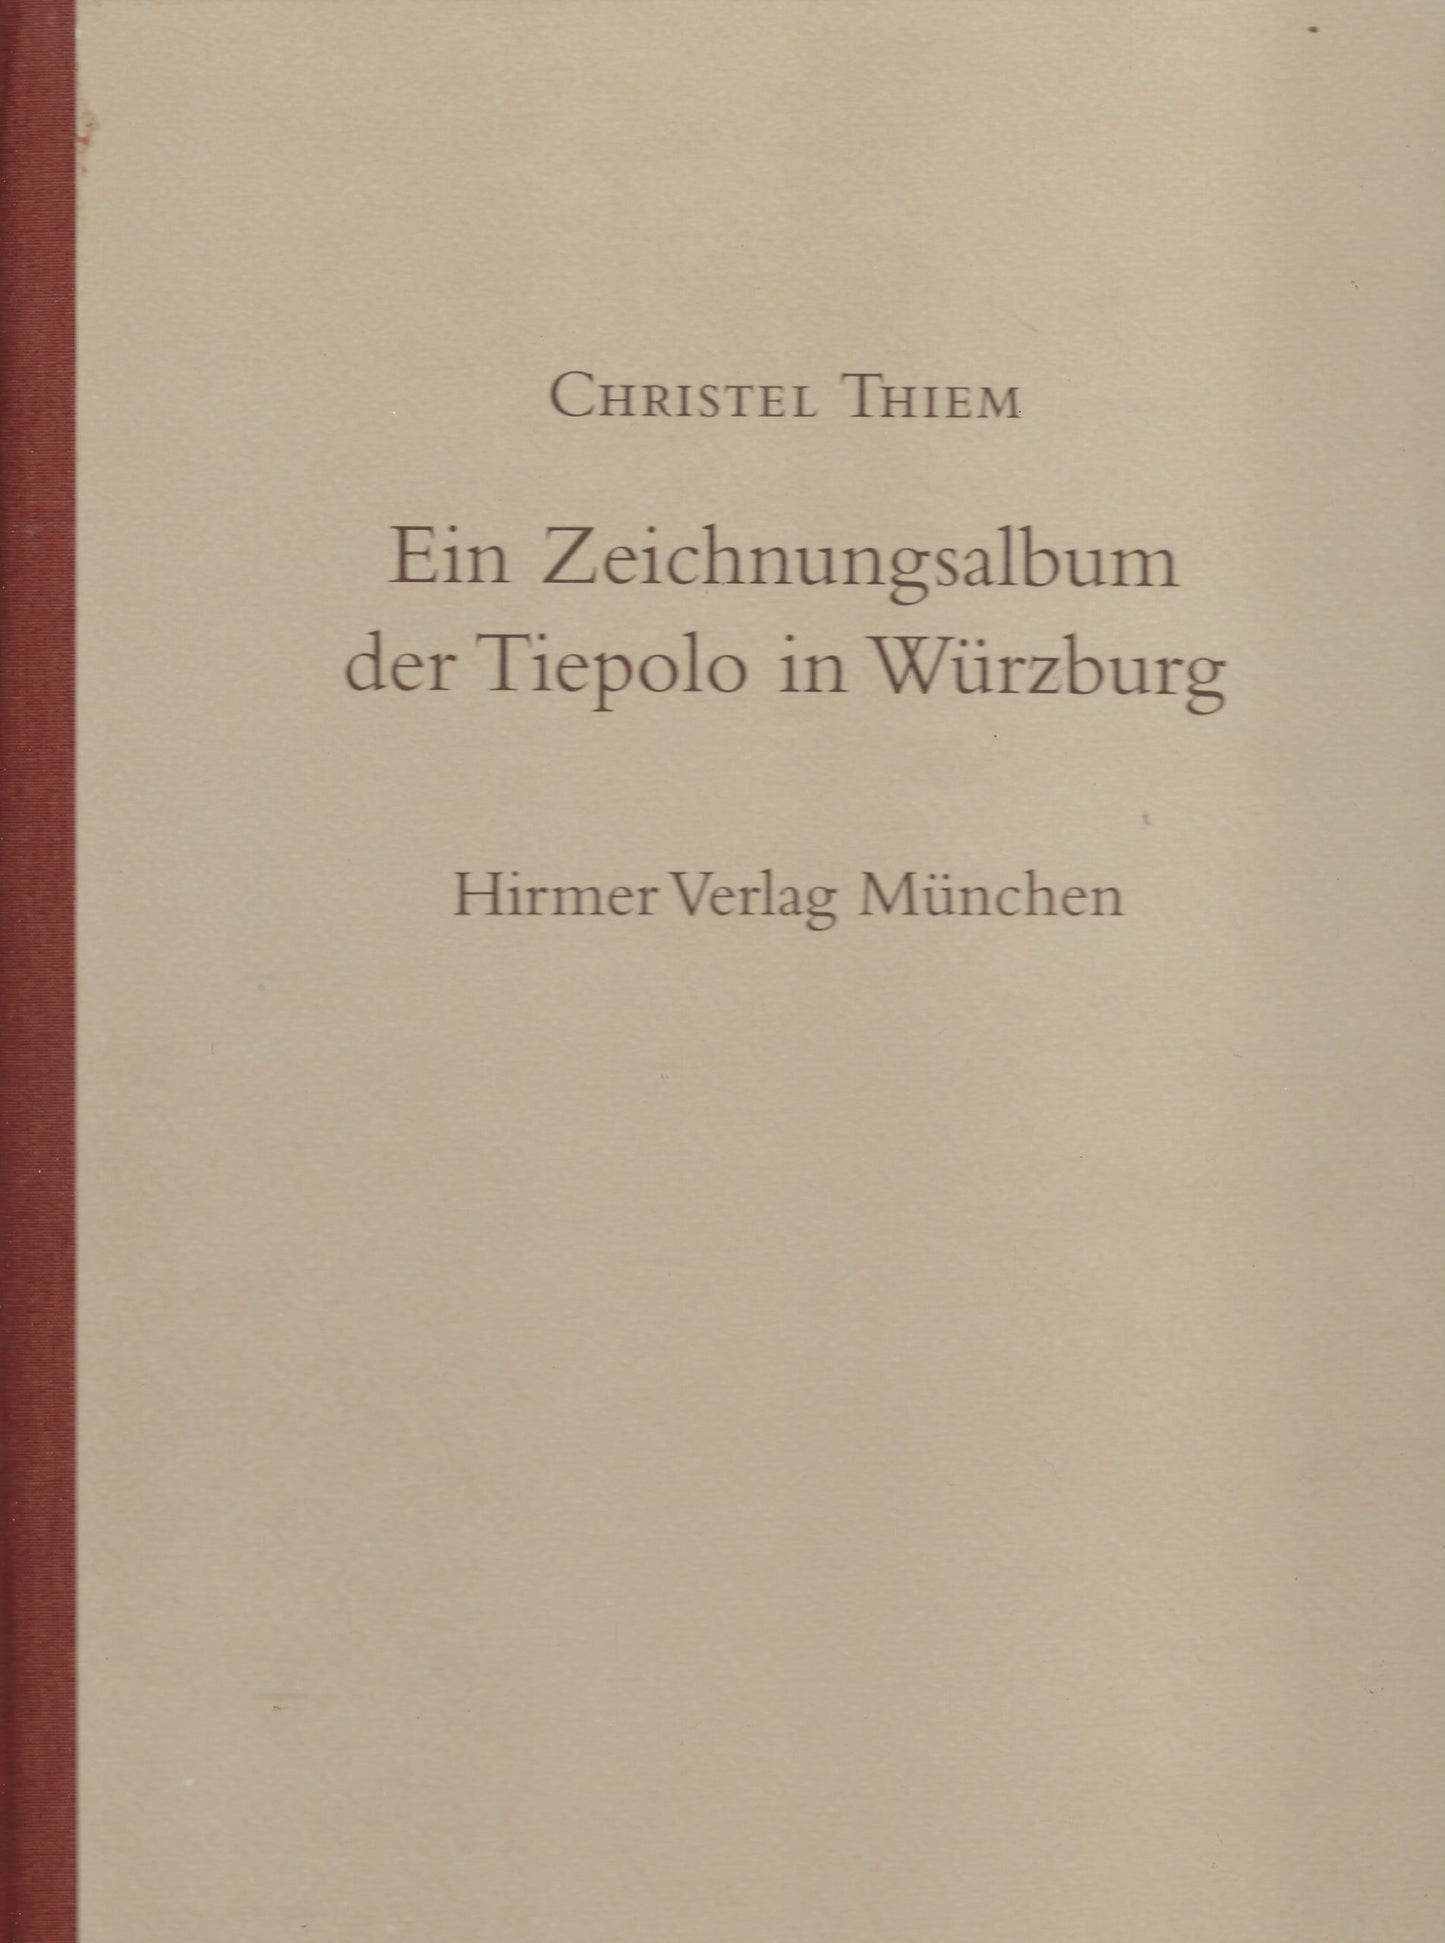 Ein Zeichnungsalbum der Tiepolo in Würzburg